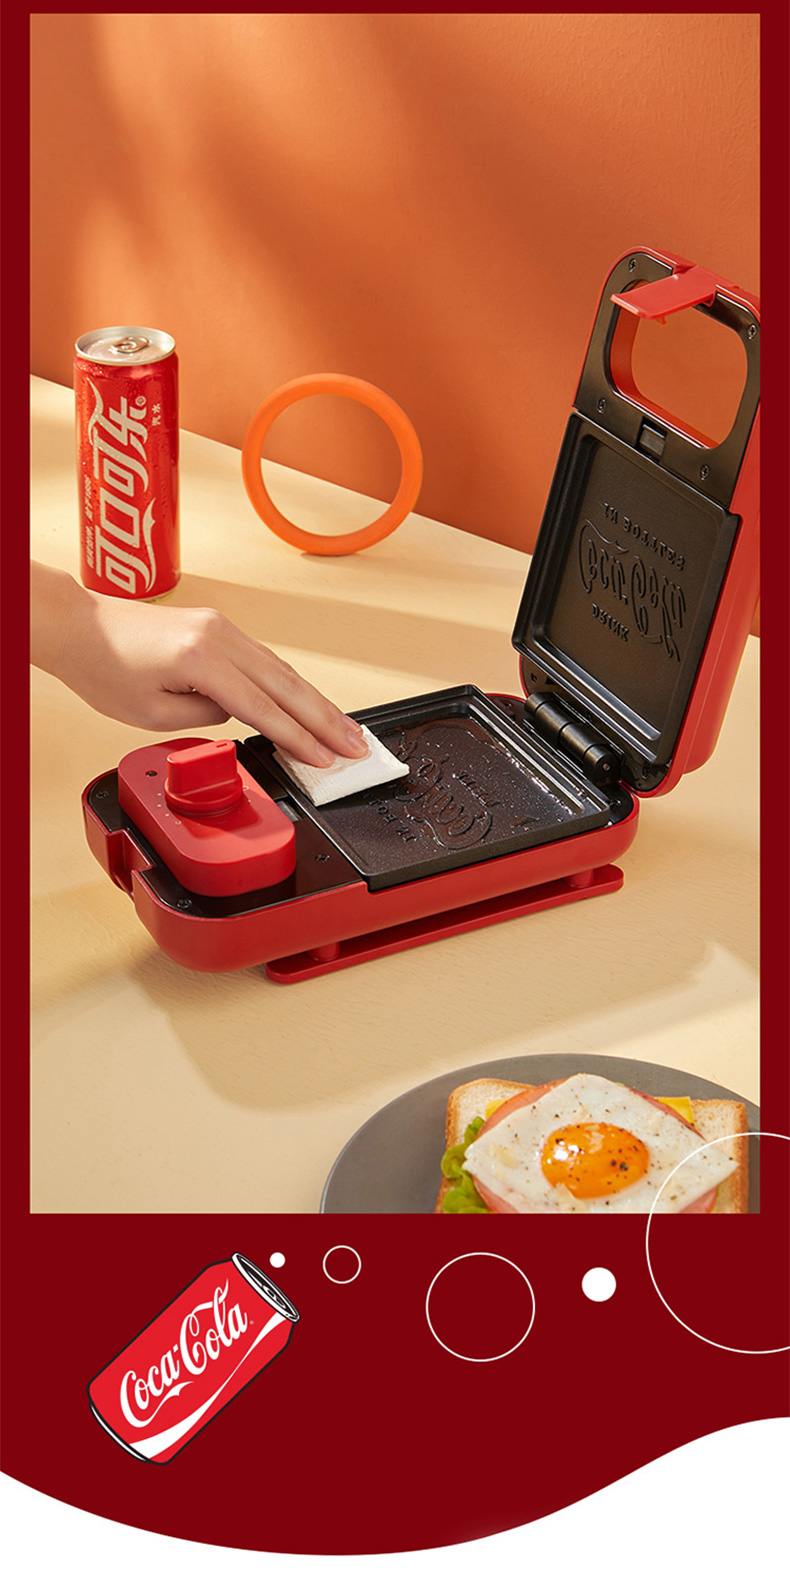 九阳三明治机迷你家用多功能早餐机华夫饼机两套烤盘